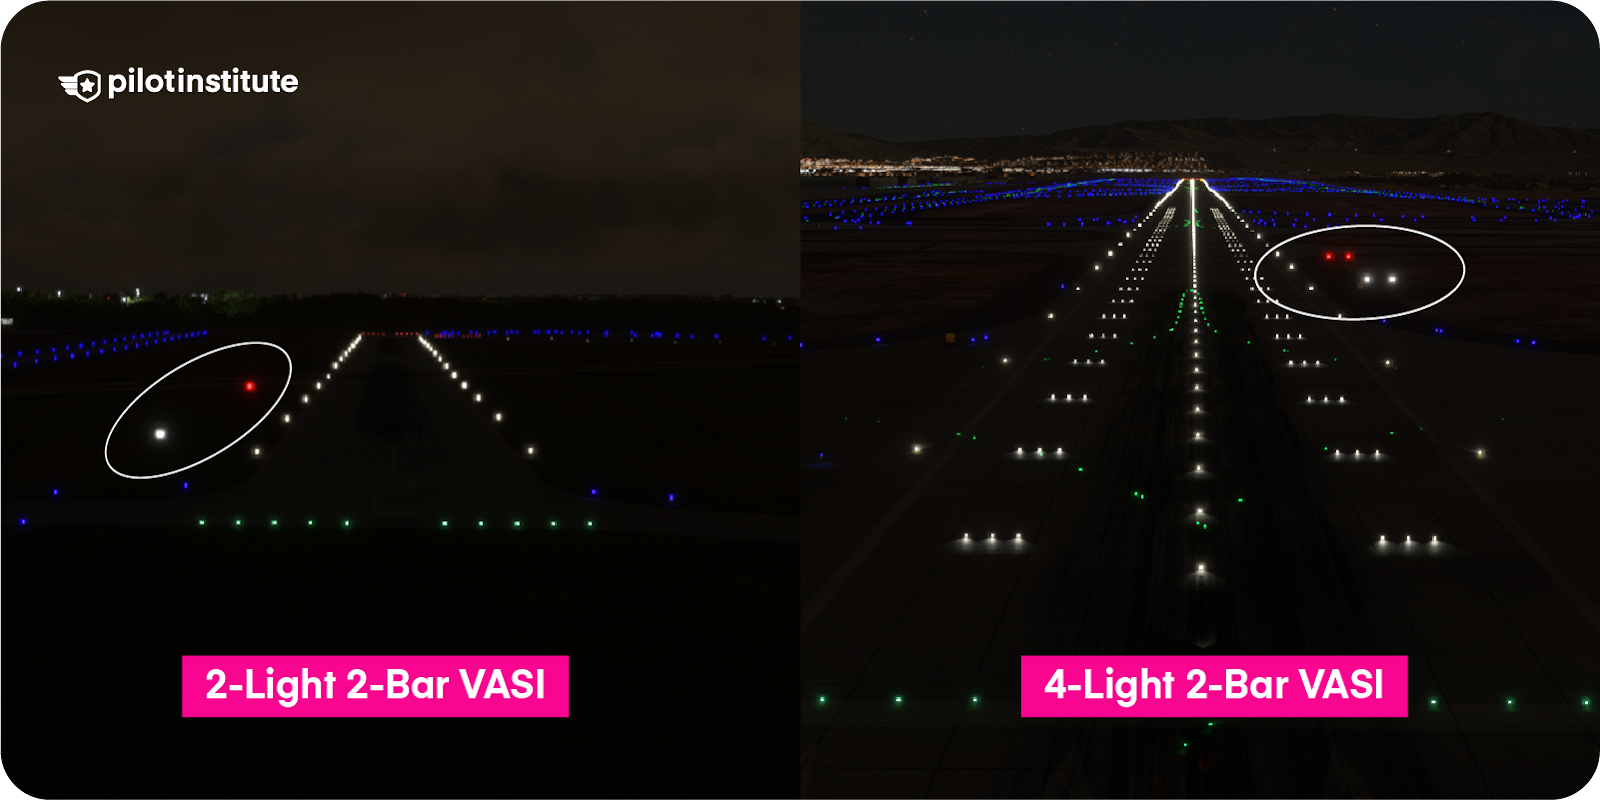 A 2-light 2-bar VASI and a 4-light 2-bar VASI indicating an aircraft on glide path.